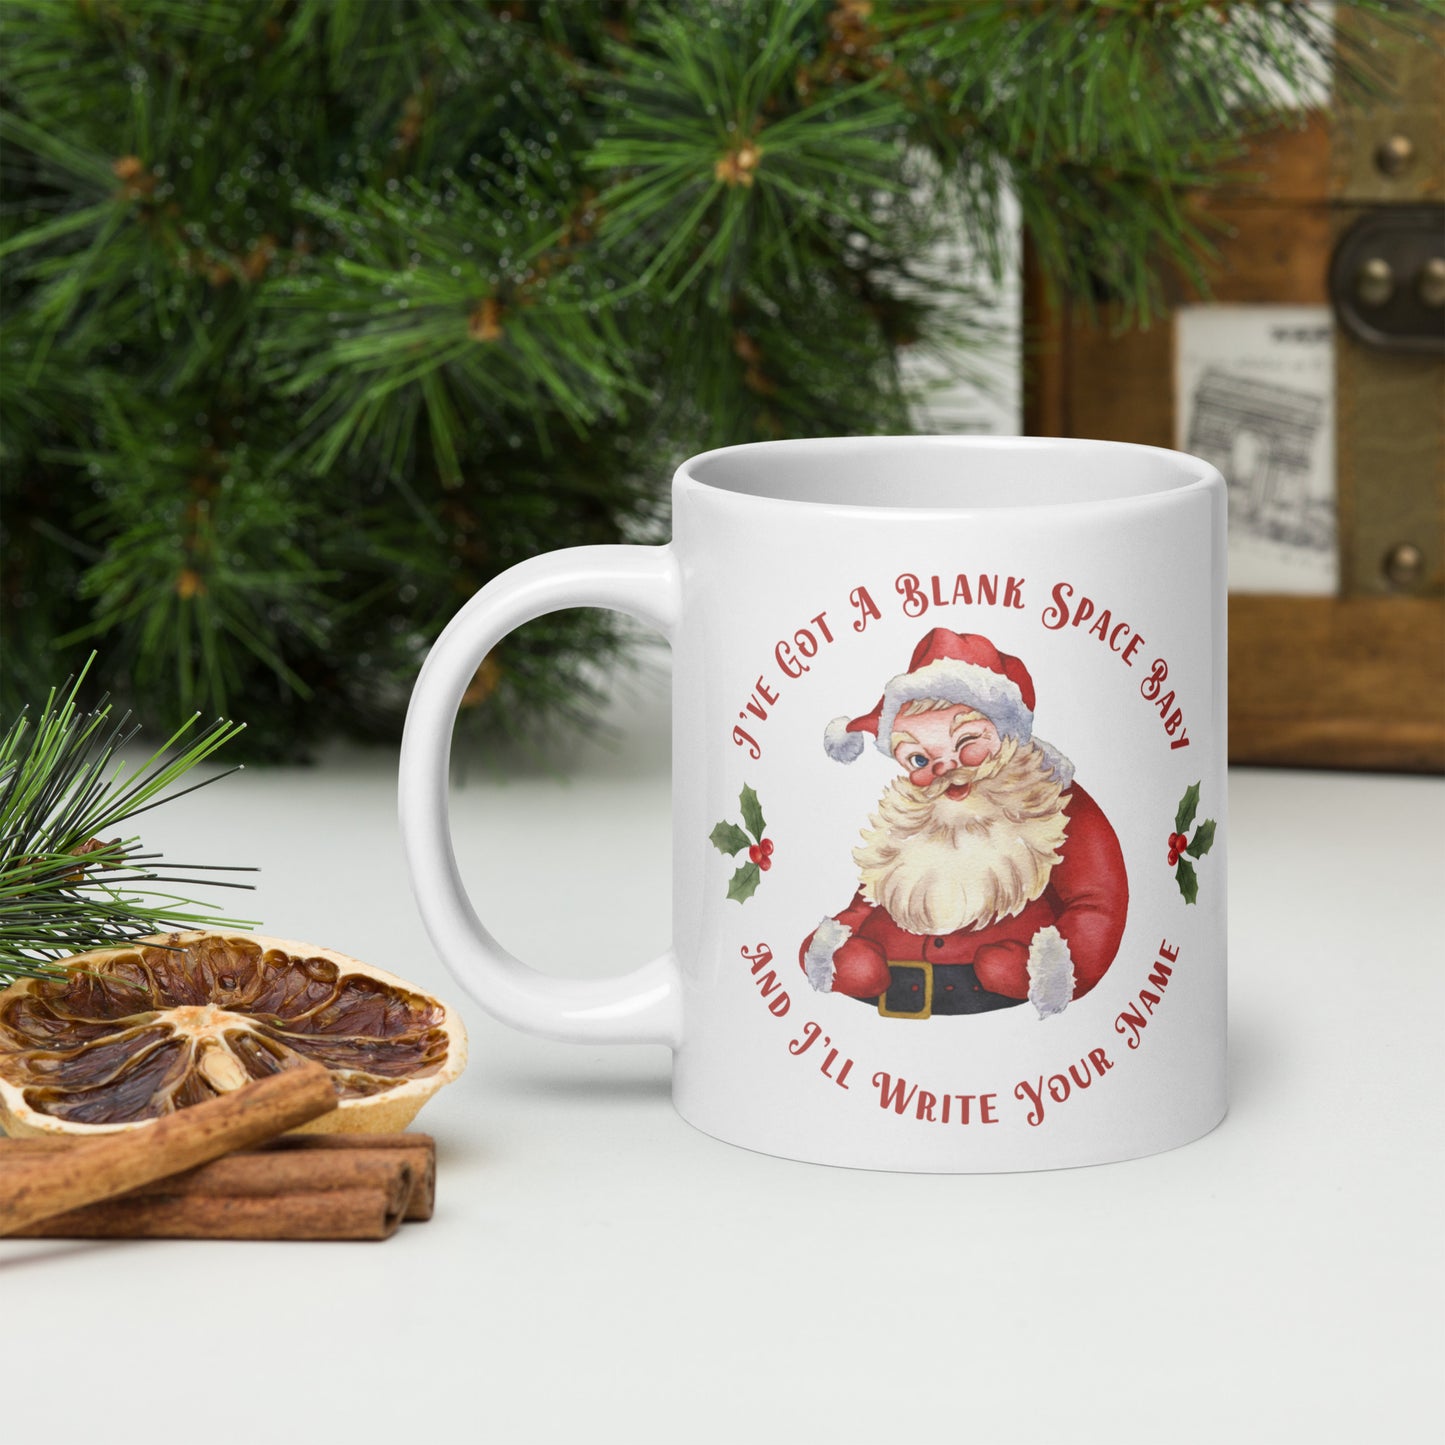 Cute Vintage Santa Blank Space Christmas Mug | Taylor Swift Christmas Mug